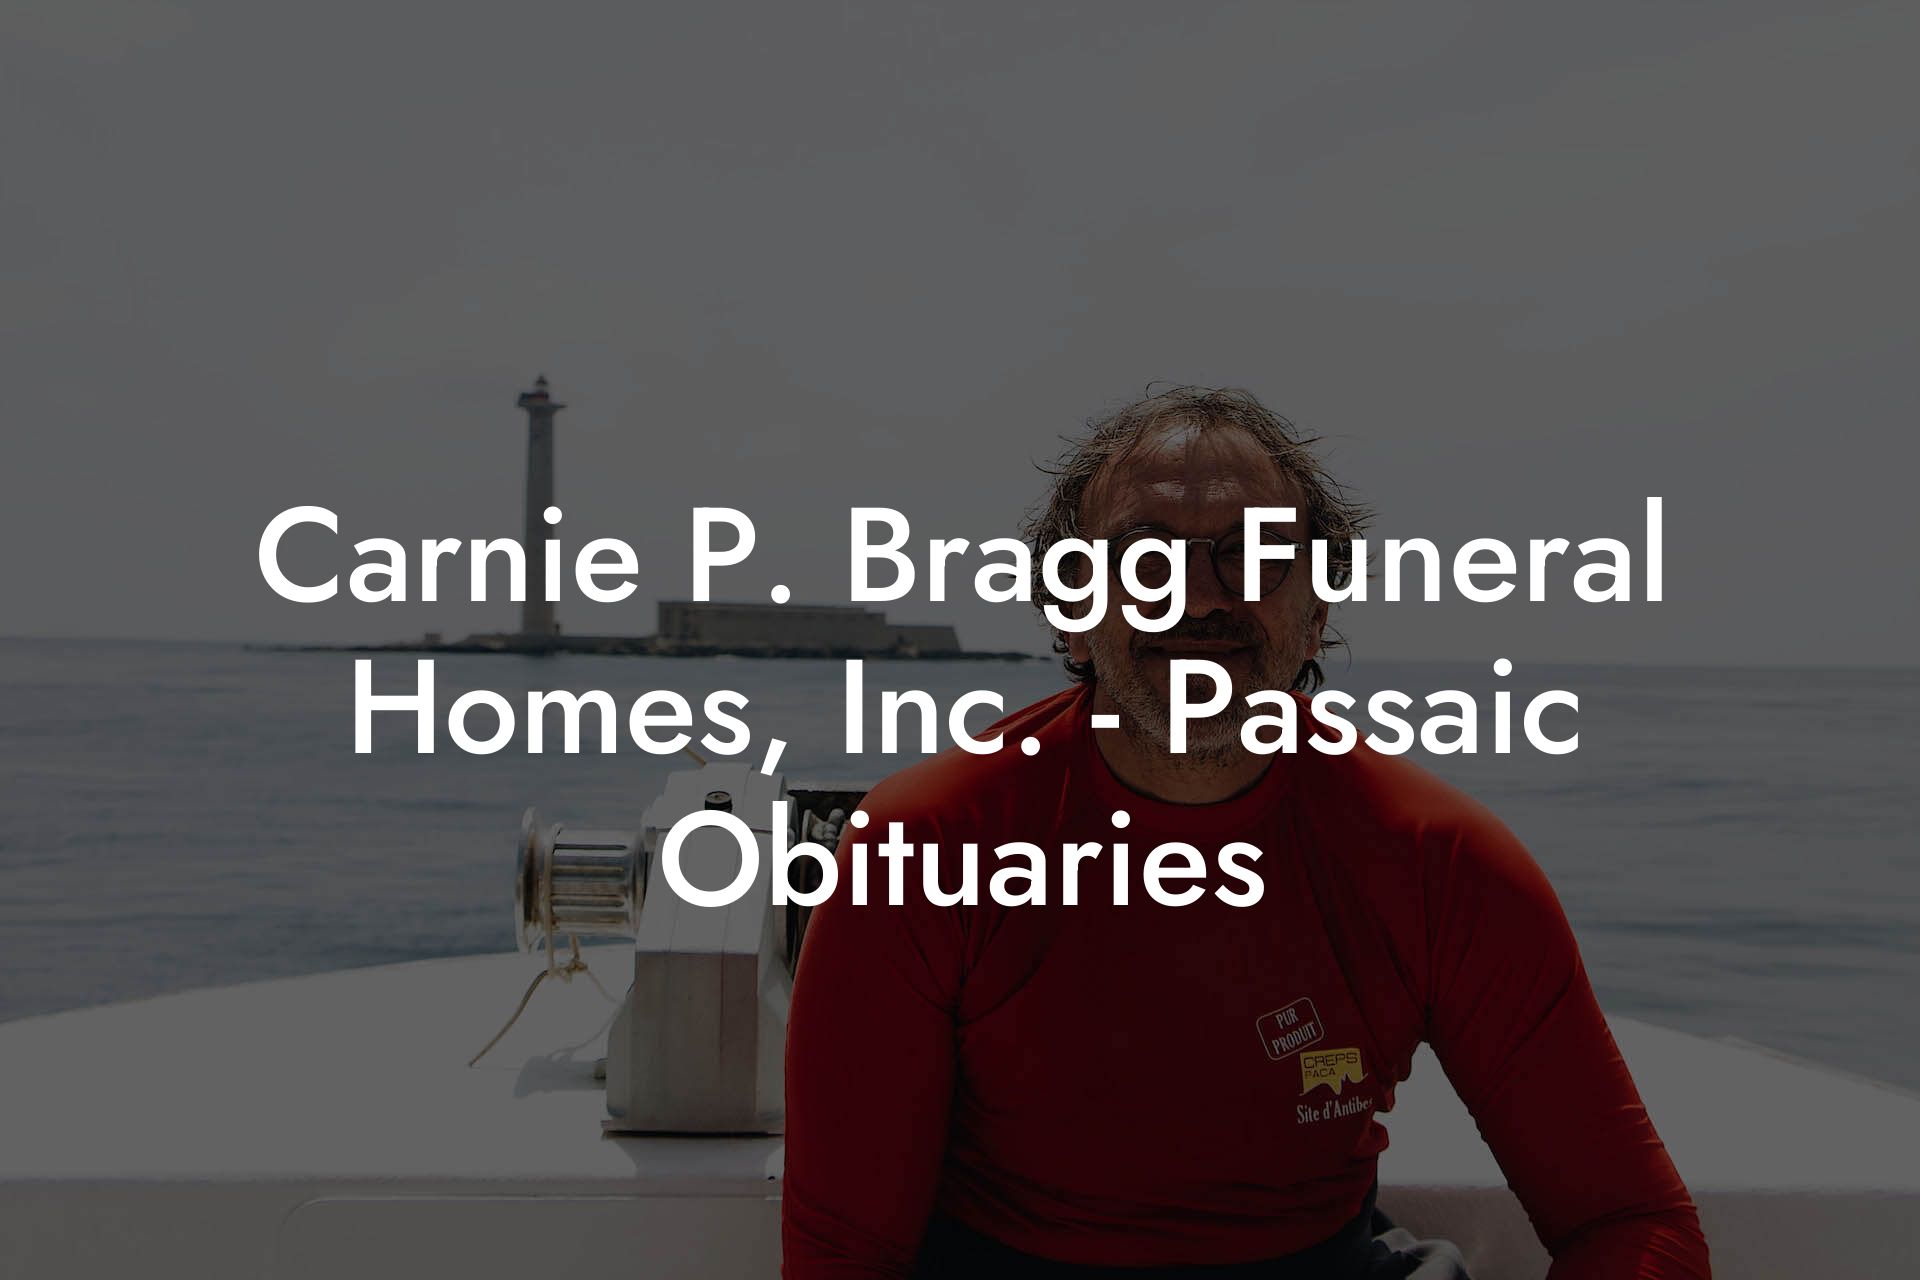 Carnie P. Bragg Funeral Homes, Inc. - Passaic Obituaries